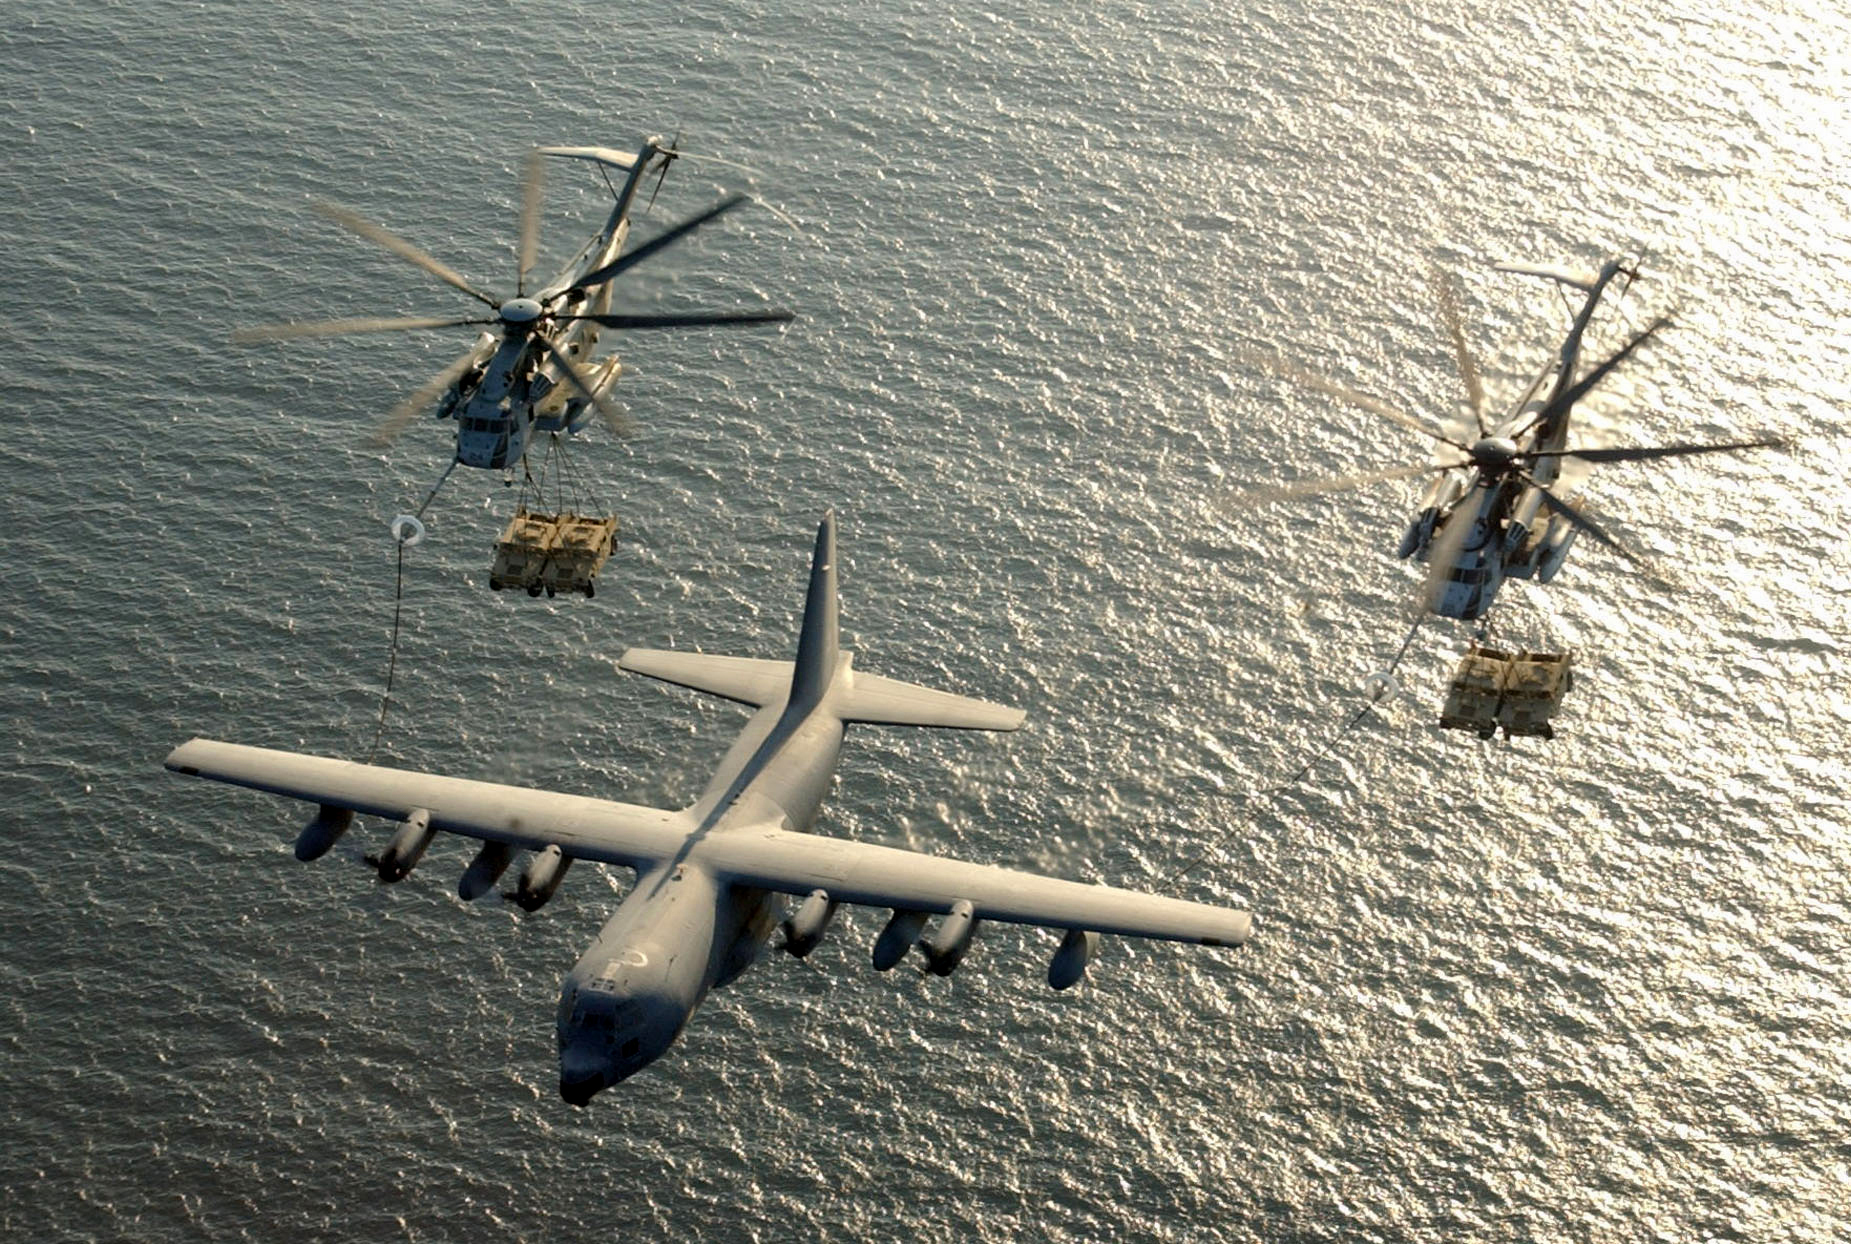 Eine ortsunabhängige Betankung von Luftfahrzeugen ist wichitg: Hier betankt eine USMC KC-130 zwei CH-53Es über dem Golf von Aden.